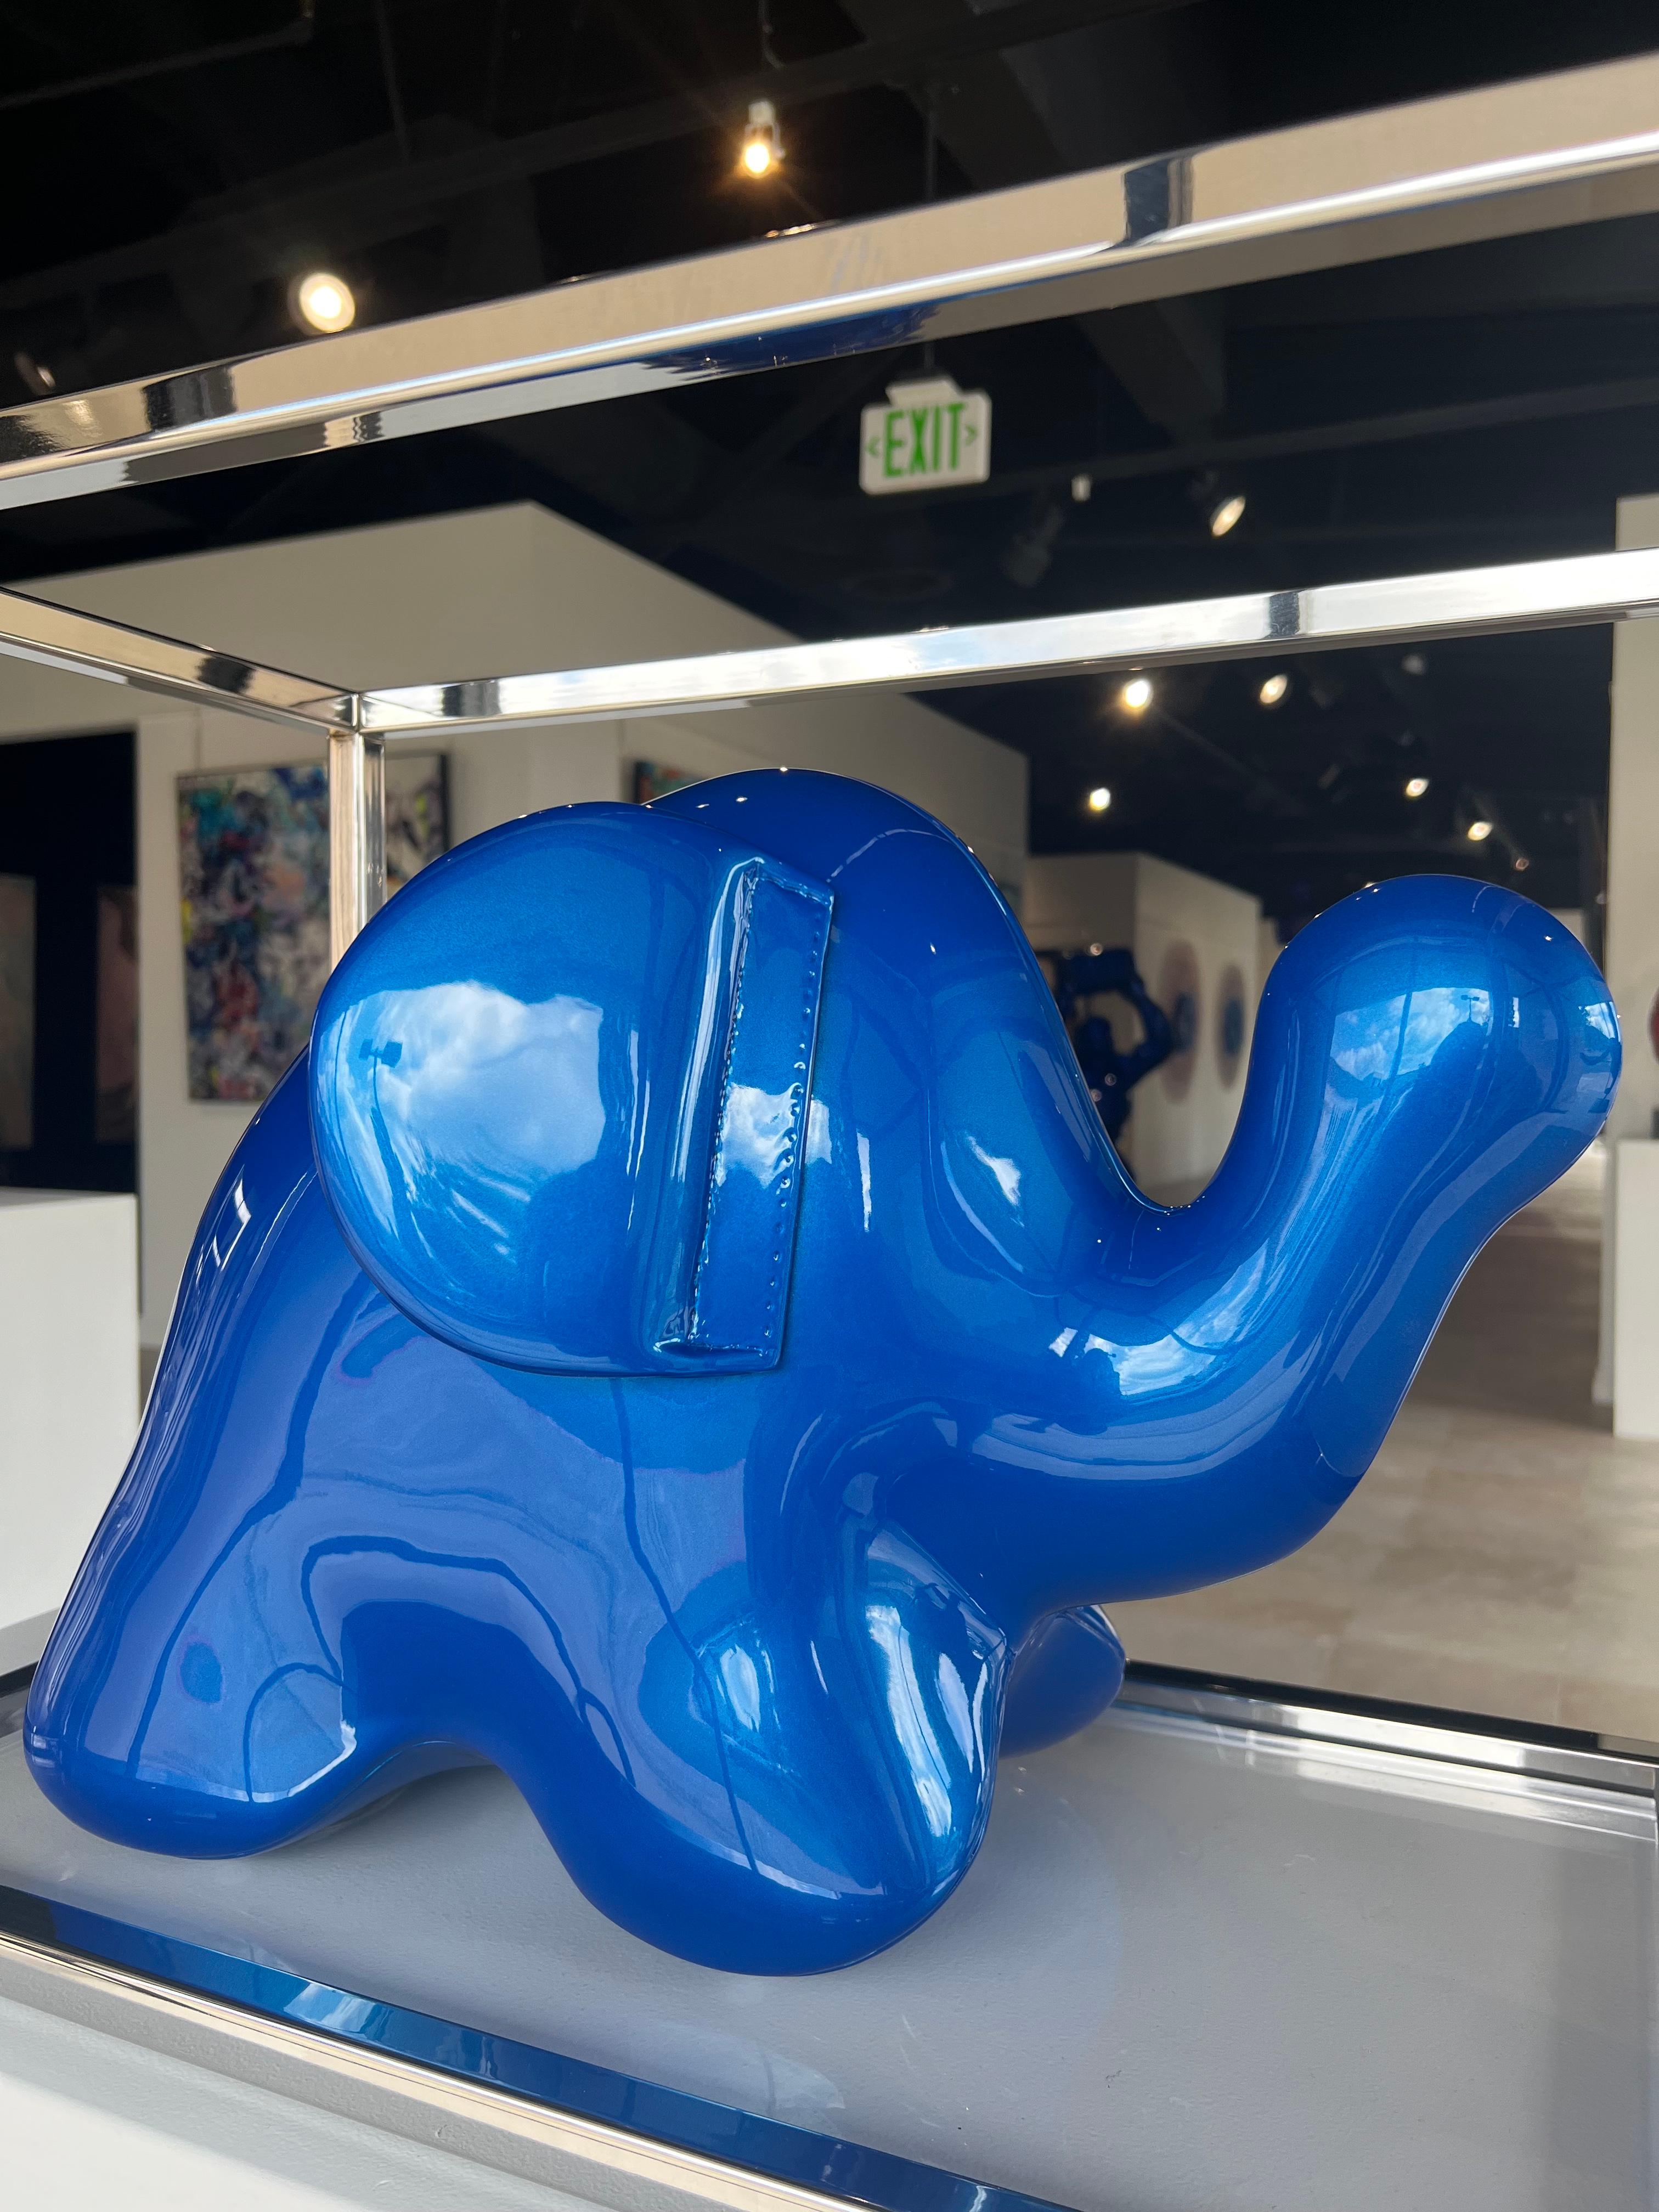 Elefante con Jaula 10/18 - Azul Oriental - Sculpture de Christopher Schulz